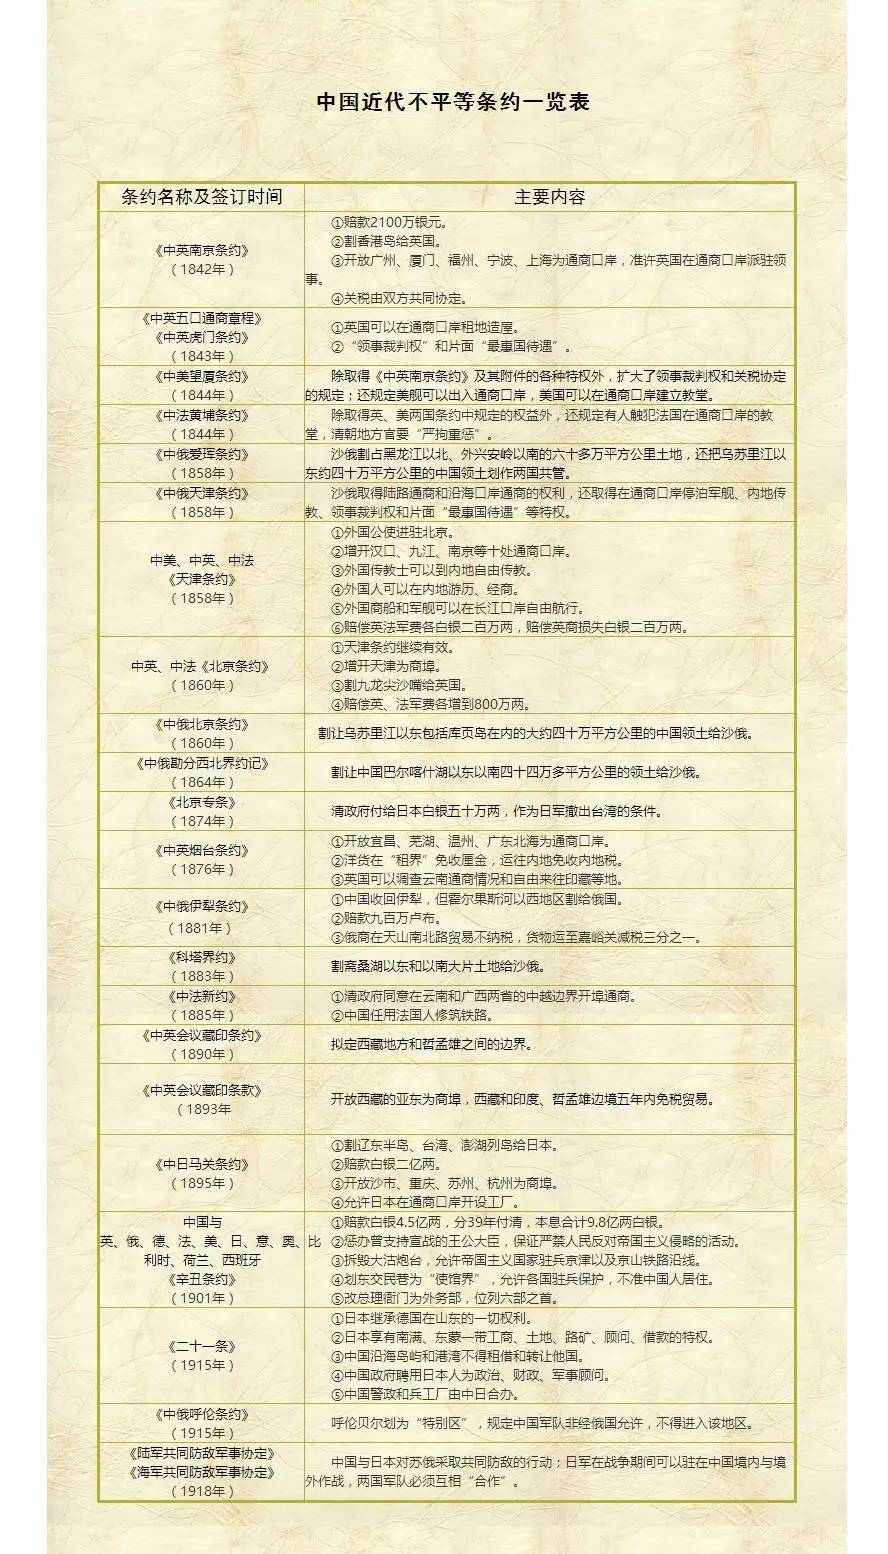 清朝不平等条约一览表图片